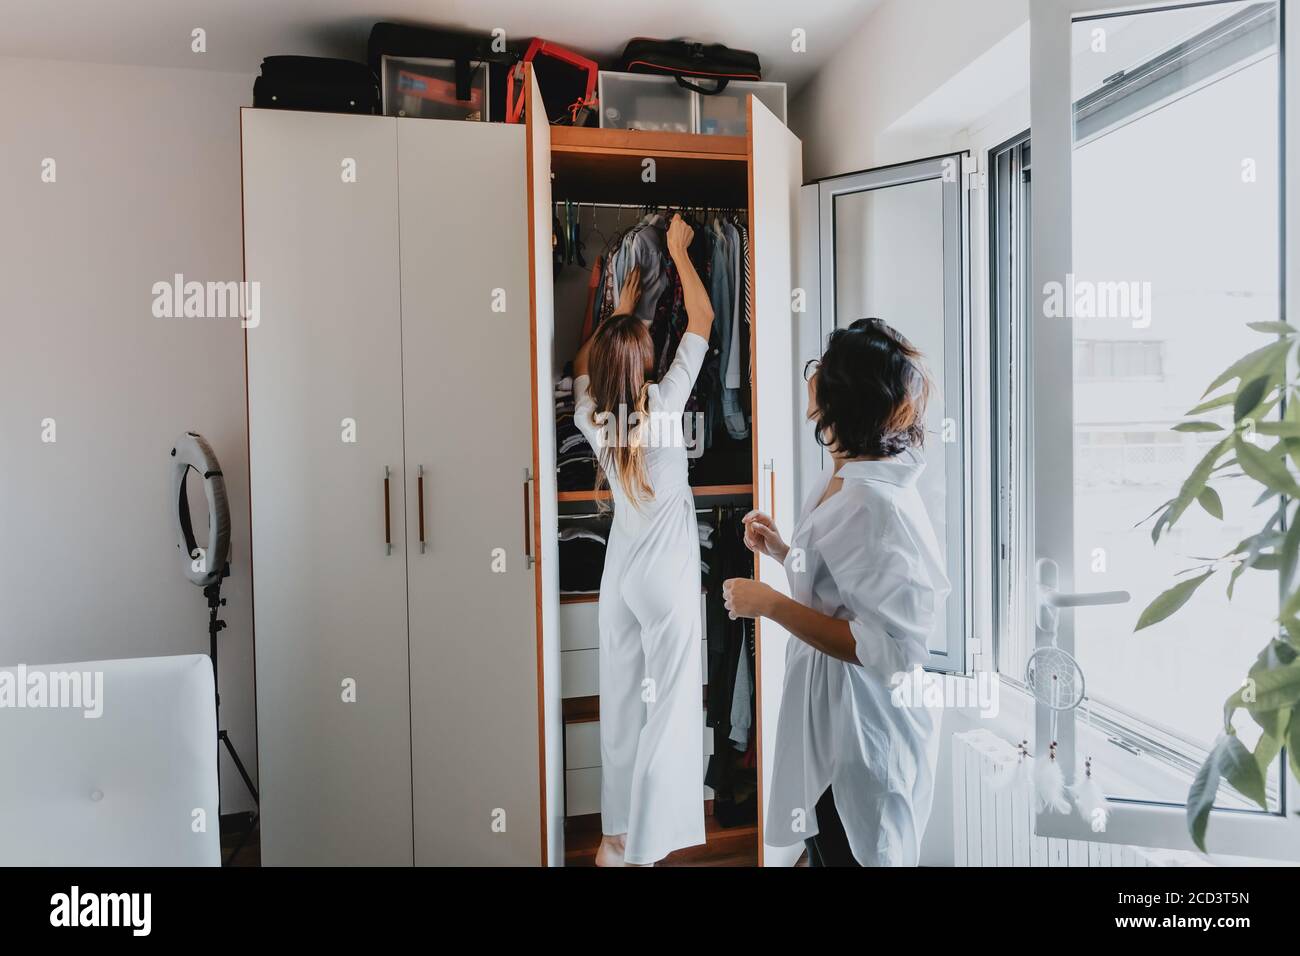 Deux femmes aux cheveux bruns debout dans un appartement, pendent des vêtements dans une armoire. Banque D'Images